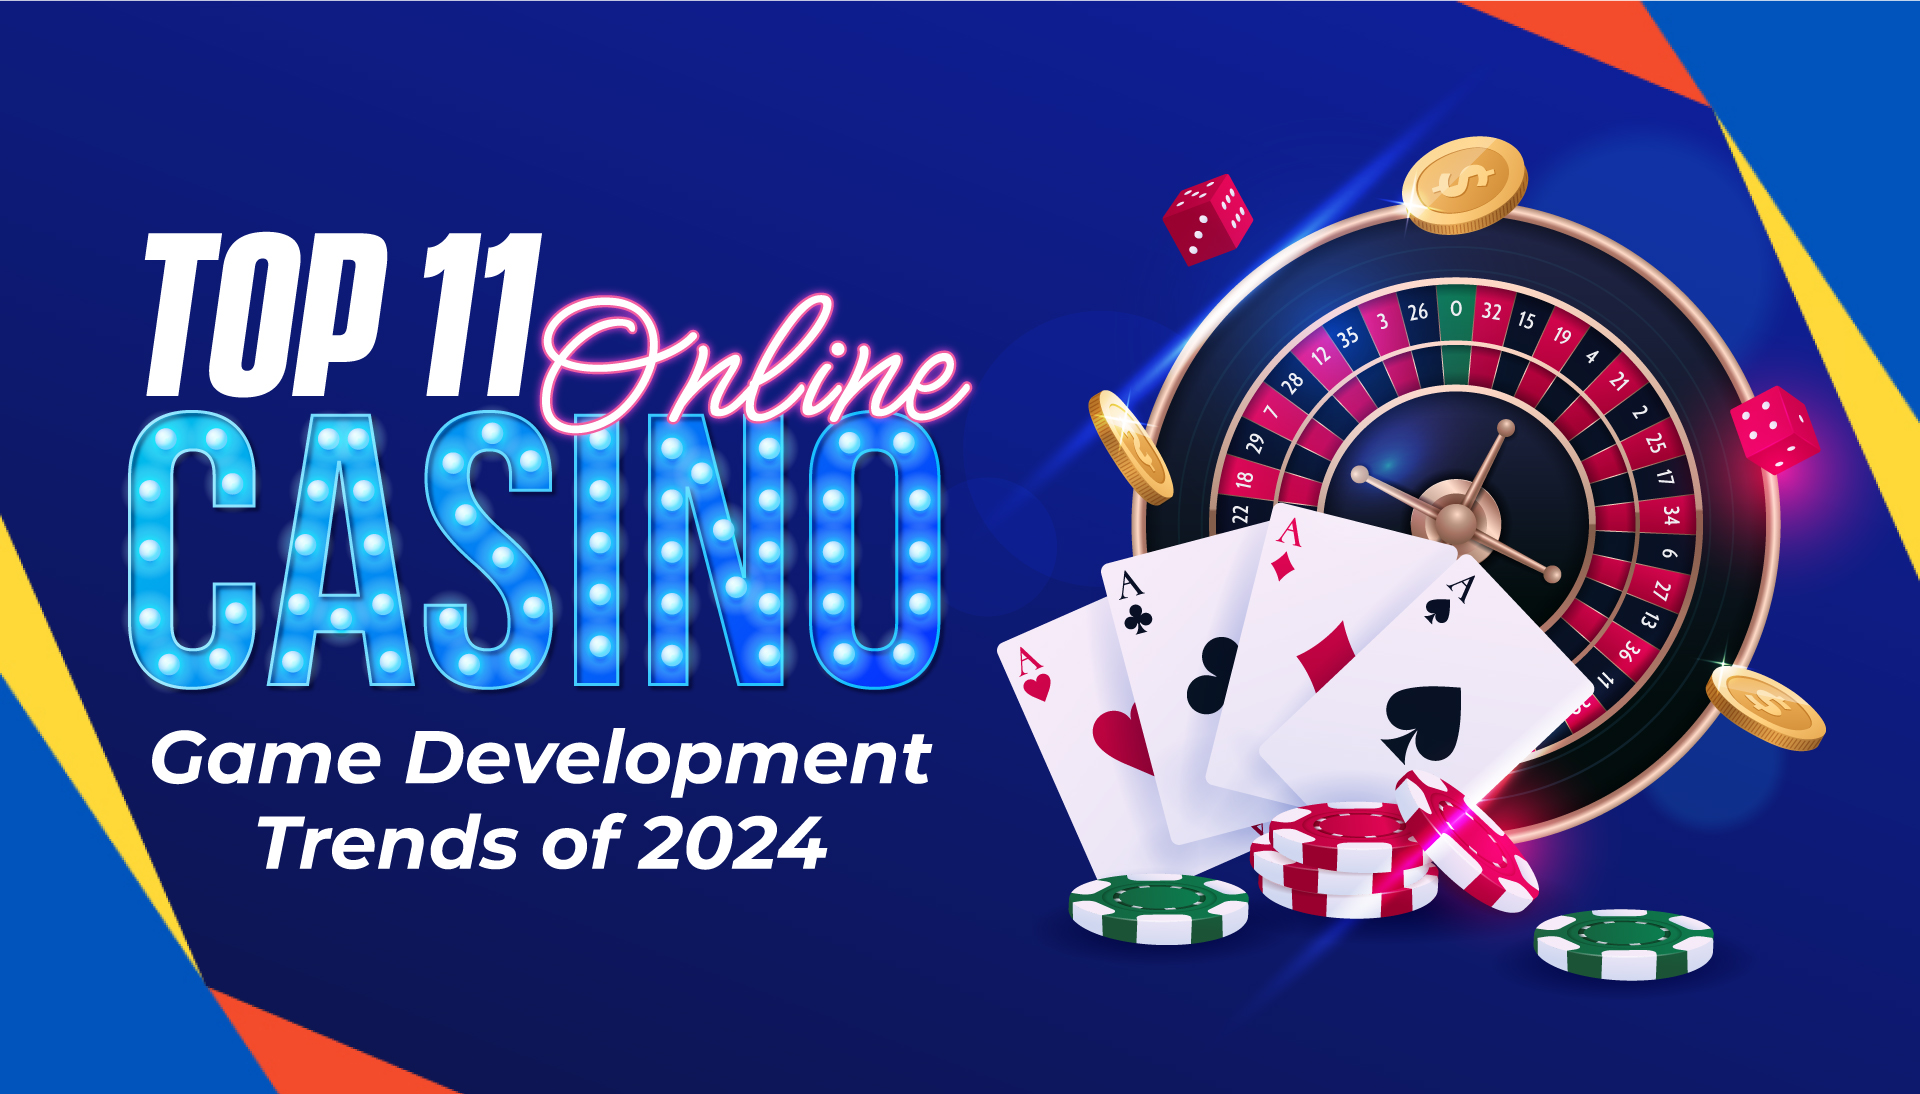 Top 11 Online Casino Game Development Trends of 2024